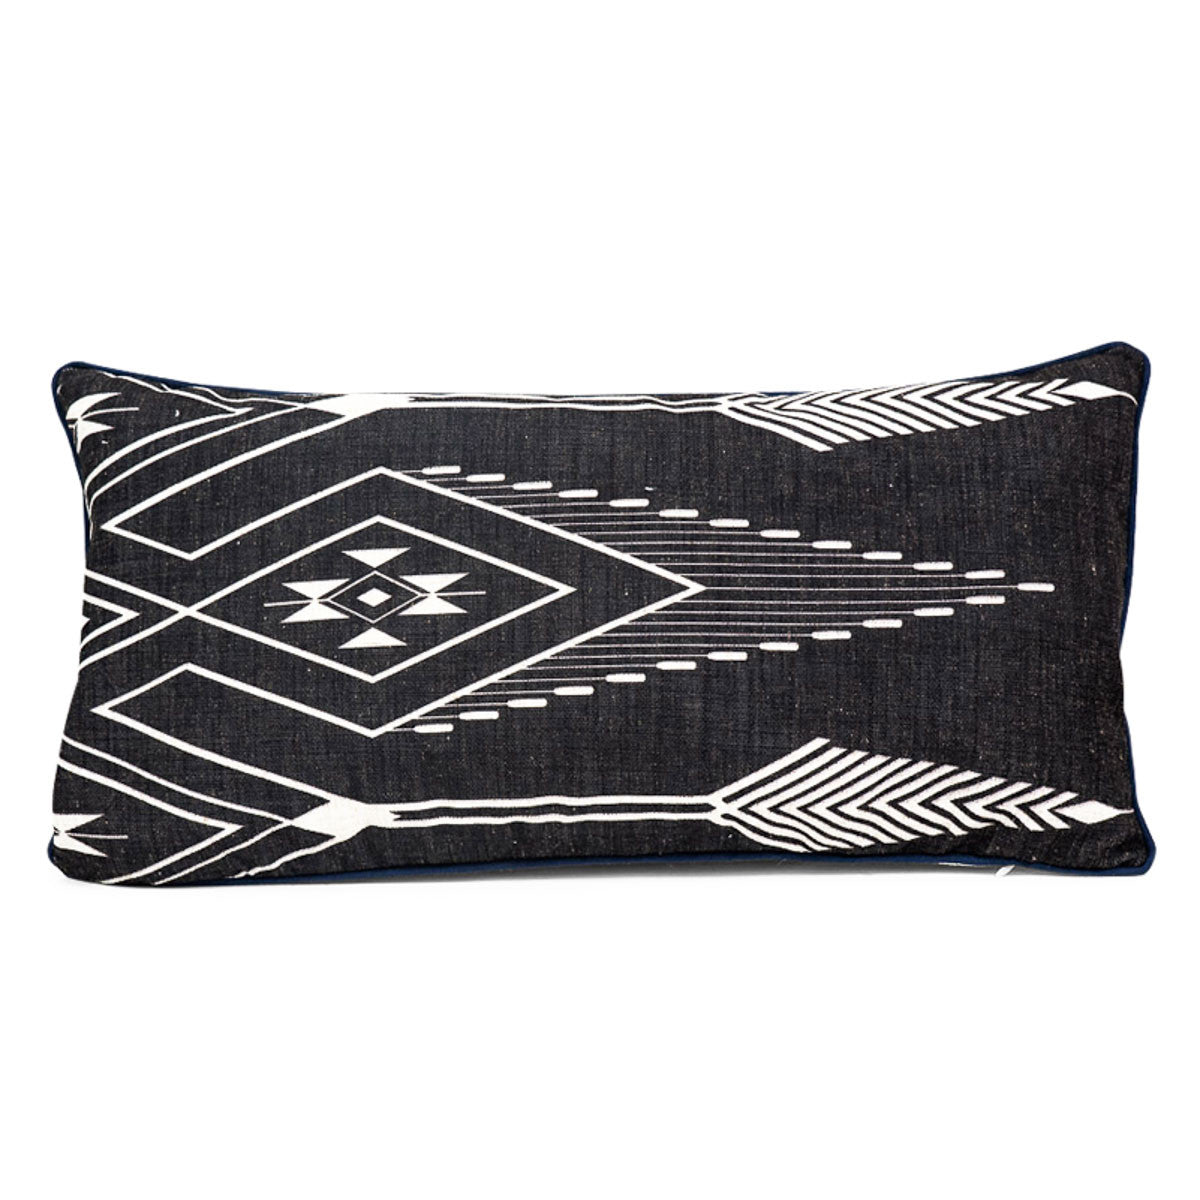 Zimbabwe Lumbar Pillow - ModShop1.com